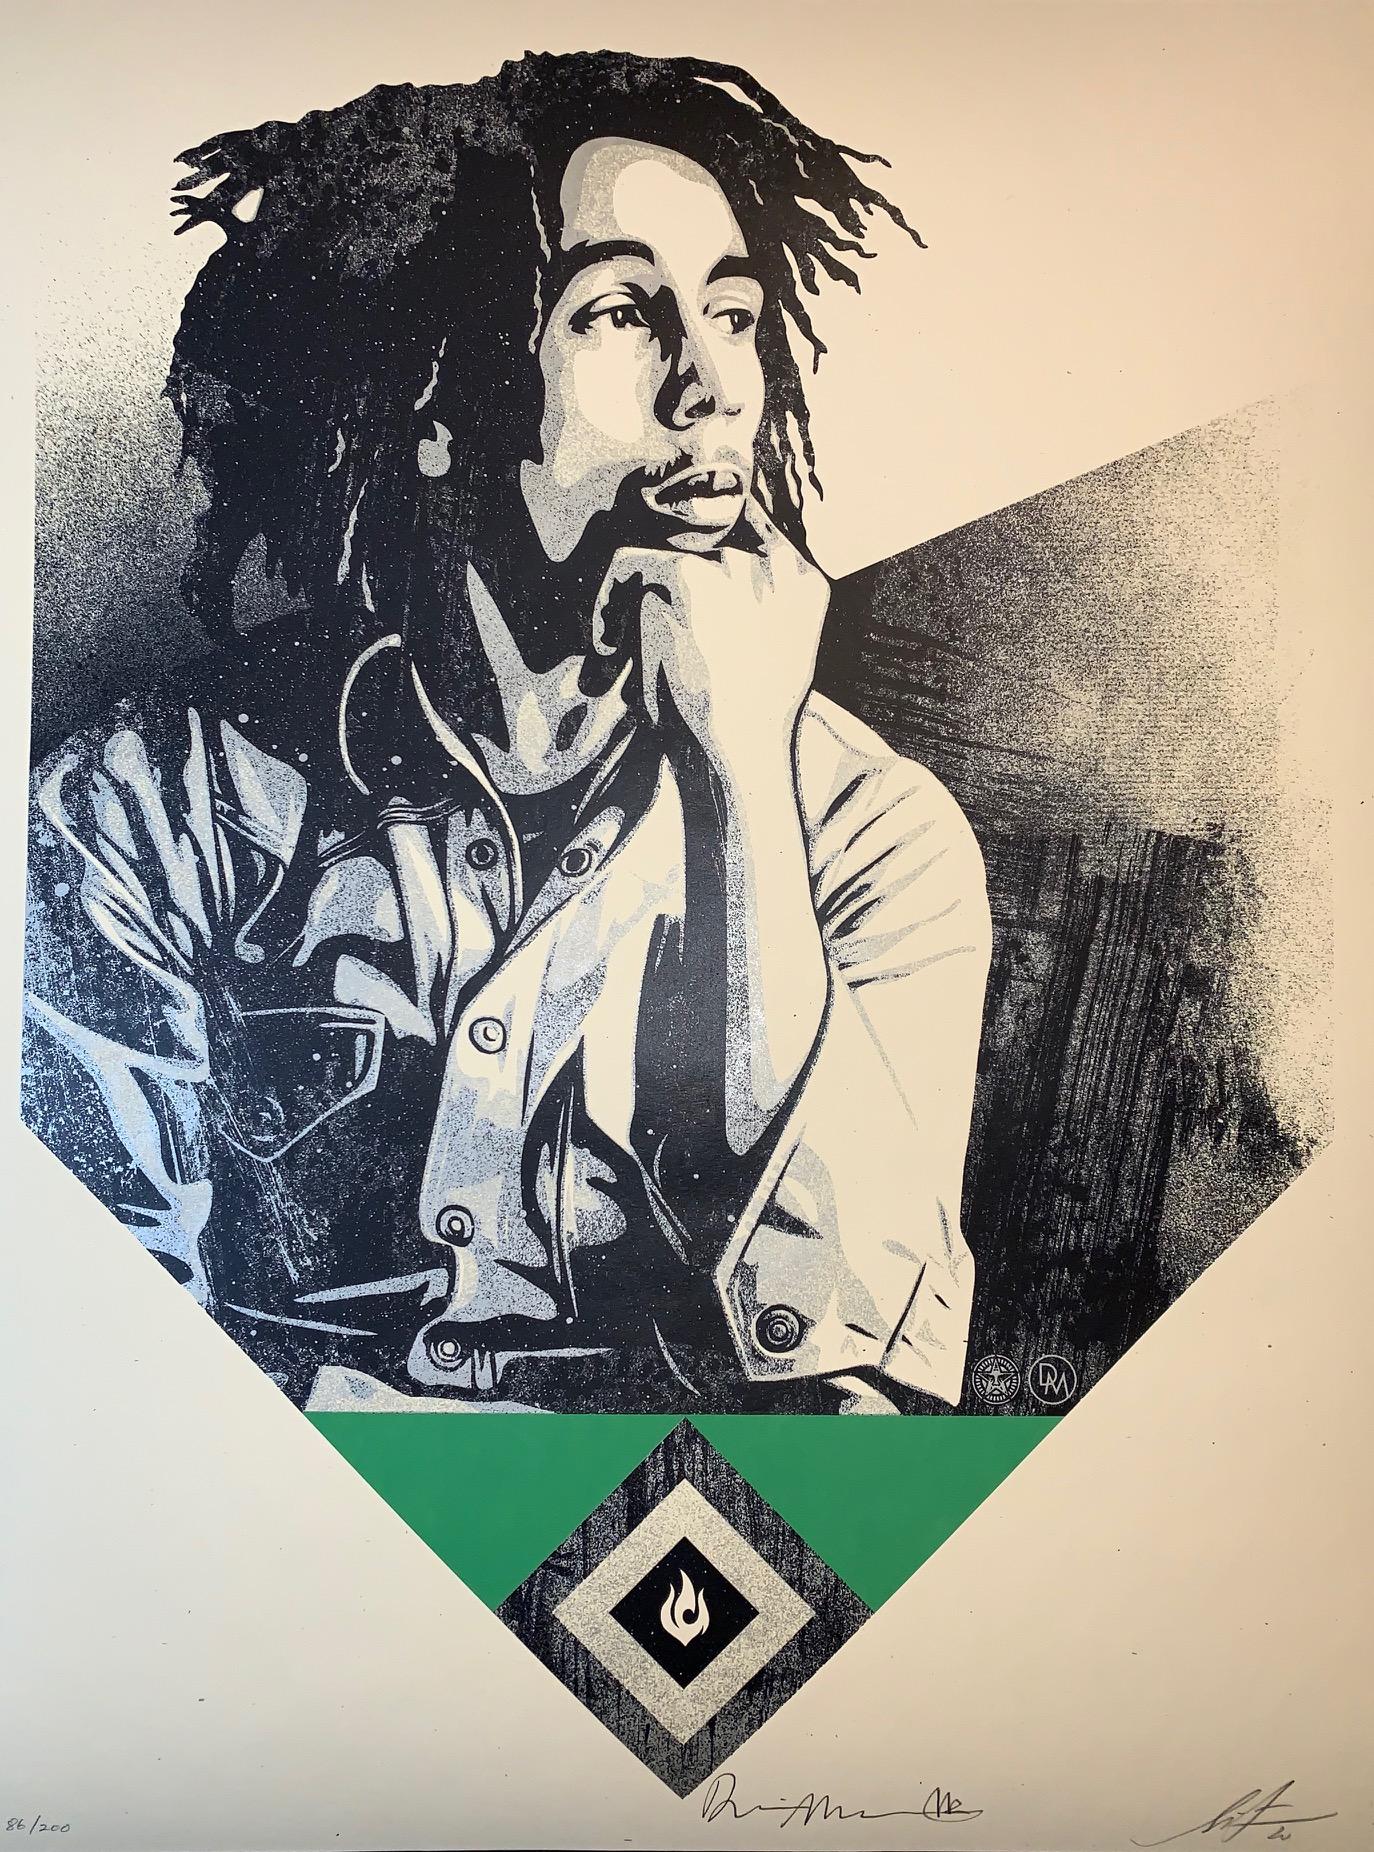 "Marley war manchmal feurig, manchmal fröhlich, manchmal kontemplativ, aber immer visionär und poetisch. Ich liebe diesen intimen, nachdenklichen Moment, den Dennis eingefangen hat, und es ist mir eine Ehre, ihn in meinem Stil umzusetzen." -Shepard